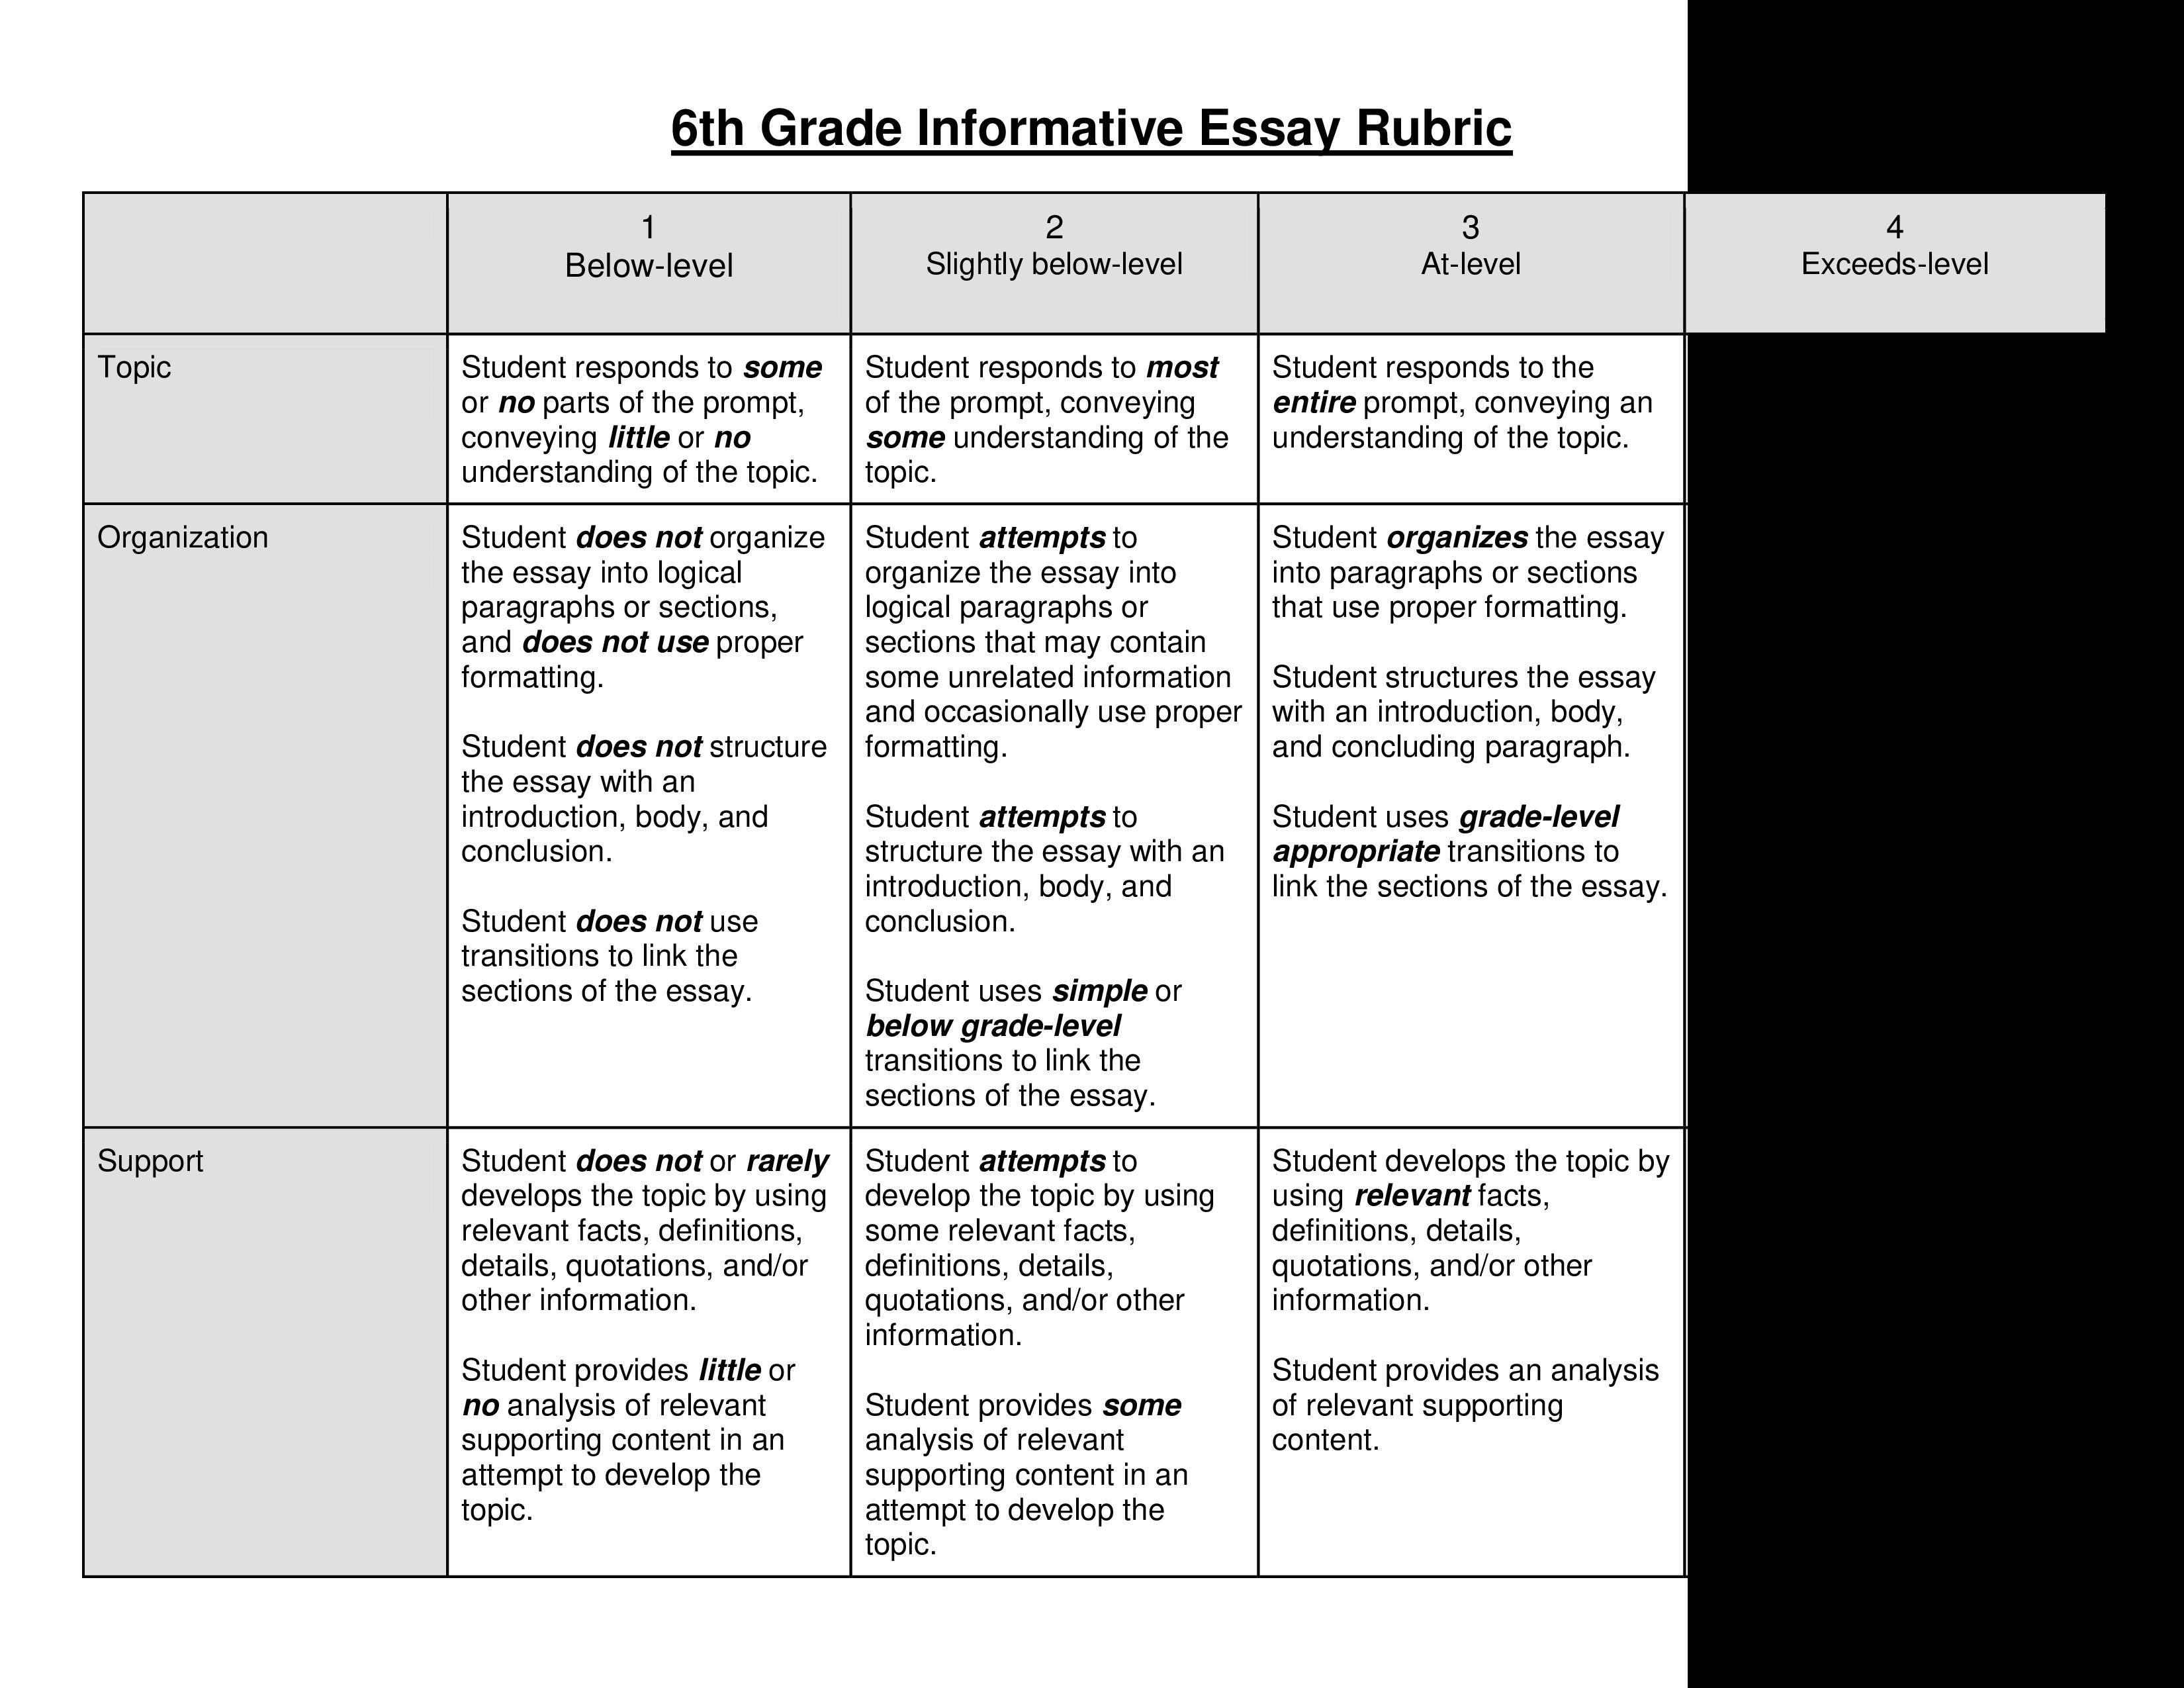 6th grade informative essay rubric